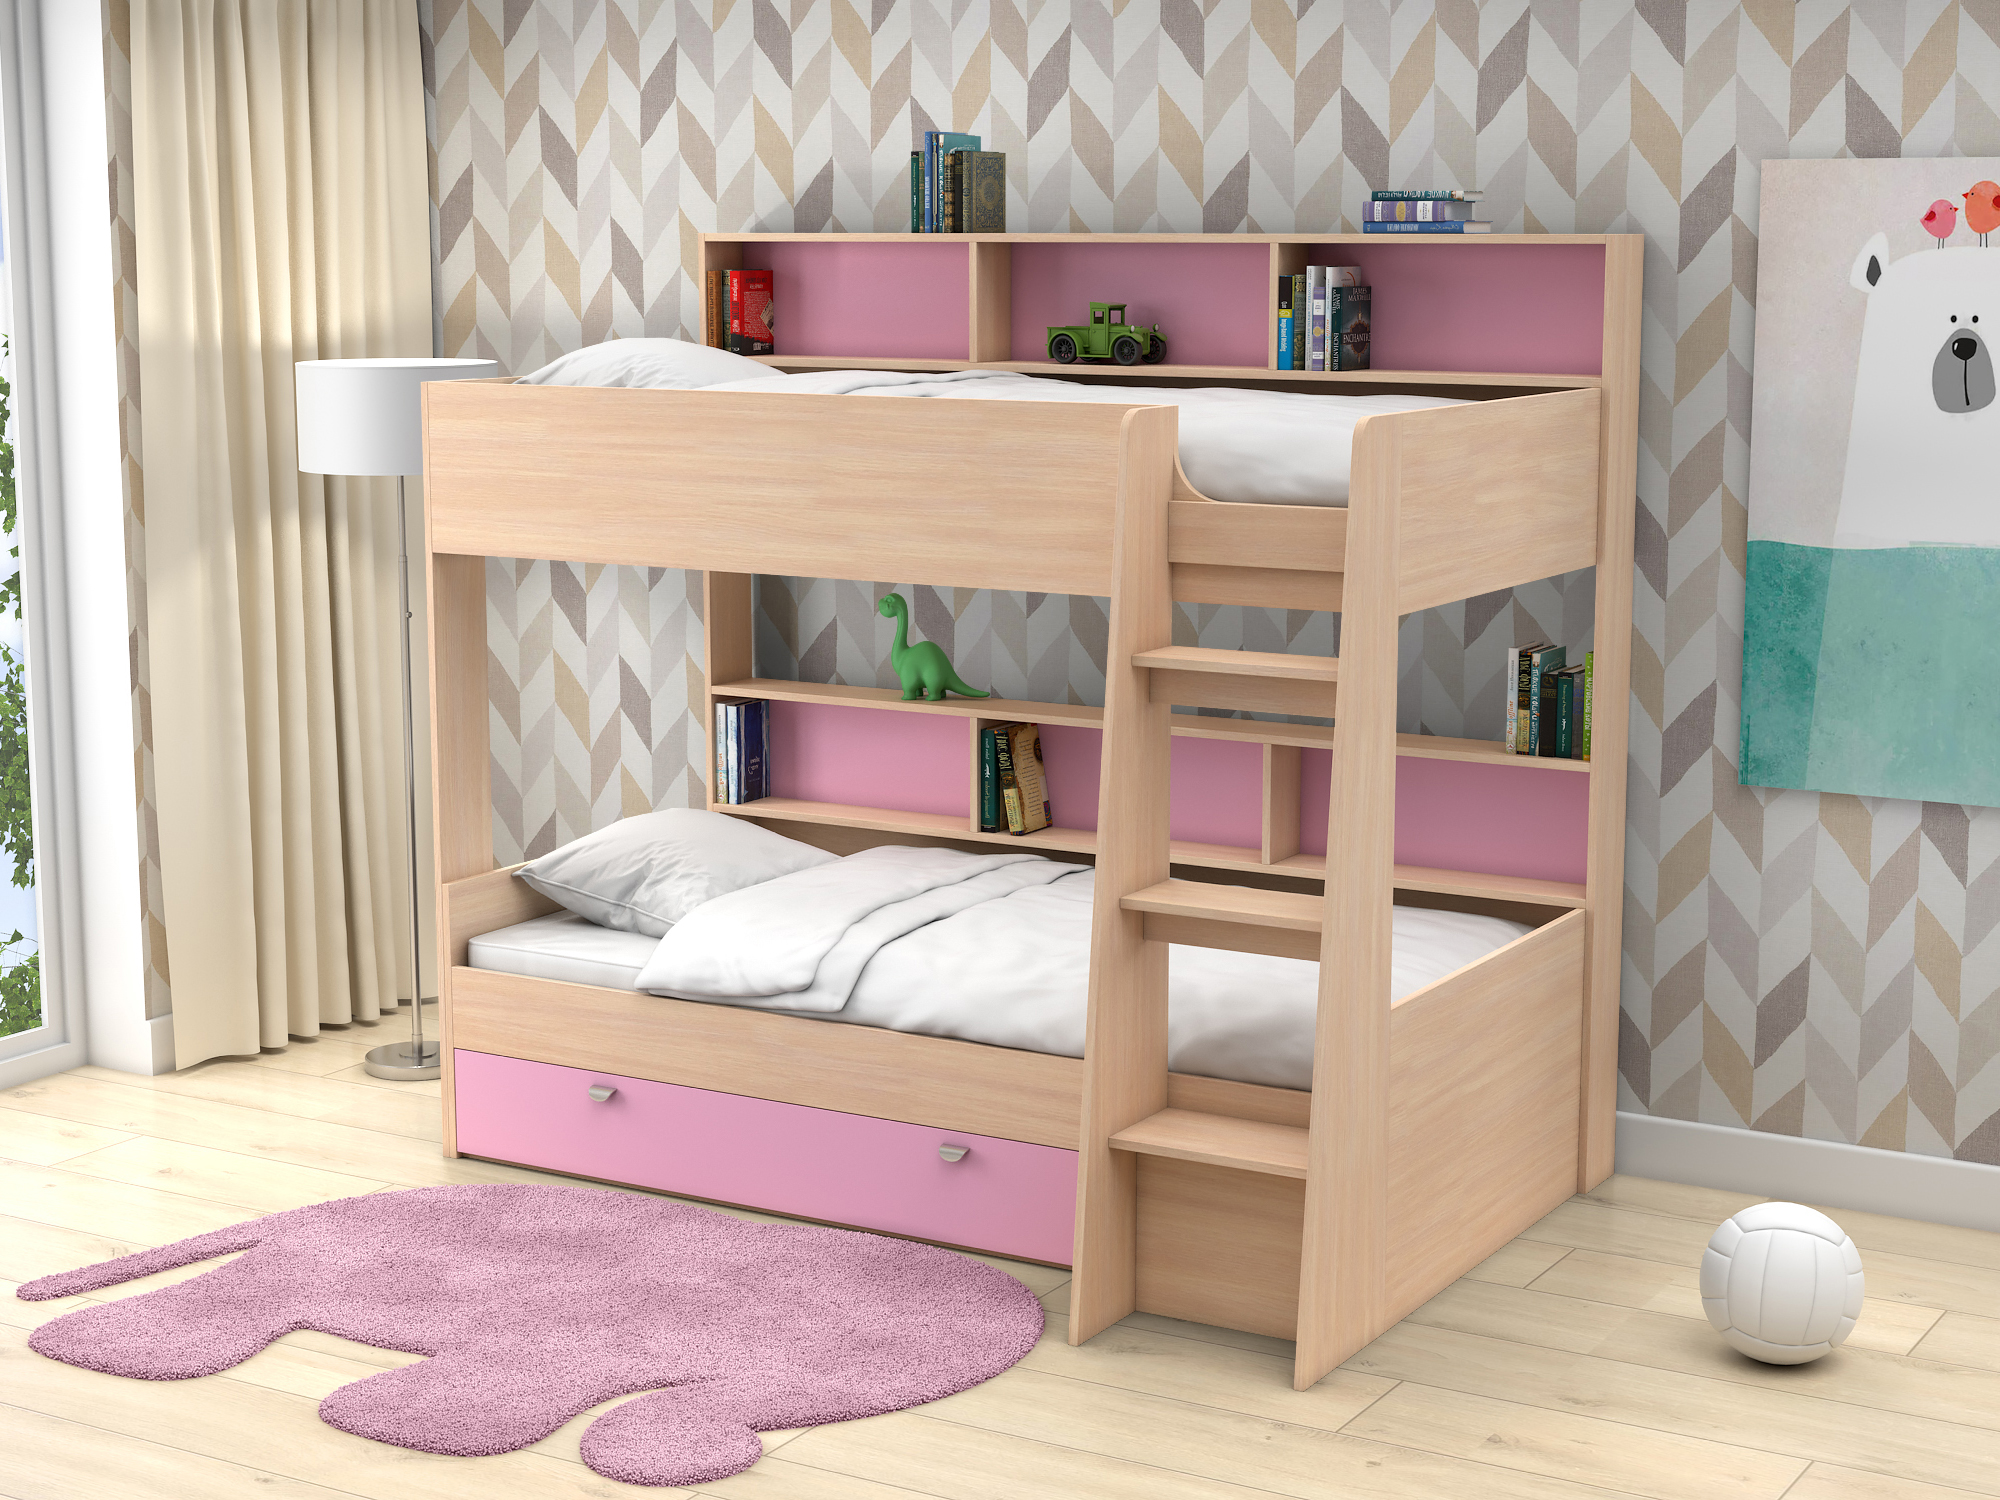 Двухъярусная кровать Golden Kids-1 (90х200) Розовый, Белый, Бежевый, ЛДСП кровать двухъярусная ассоль плюс 90х200 ваниль бежевый мдф лдсп